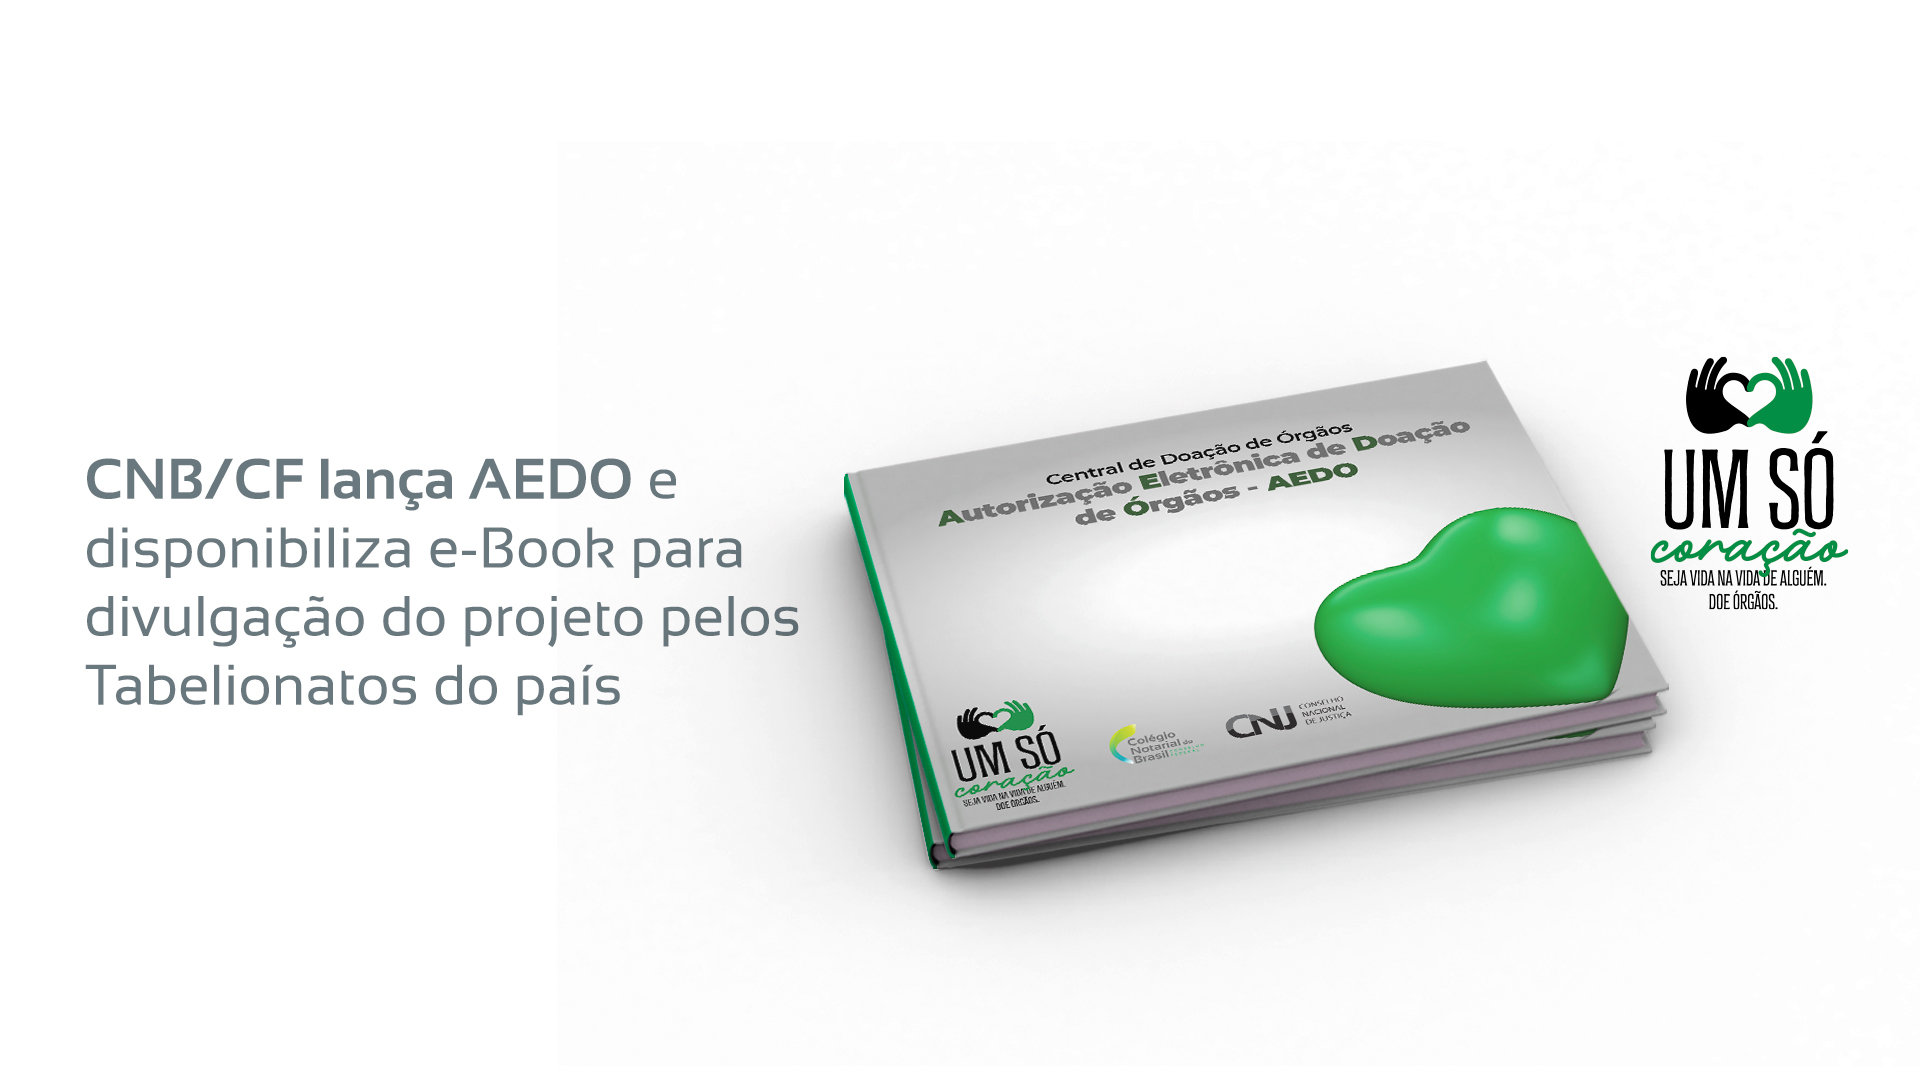 CNB/CF Lança AEDO E Disponibiliza E-Book Para Divulgação Do Projeto Pelos Tabelionatos Do País